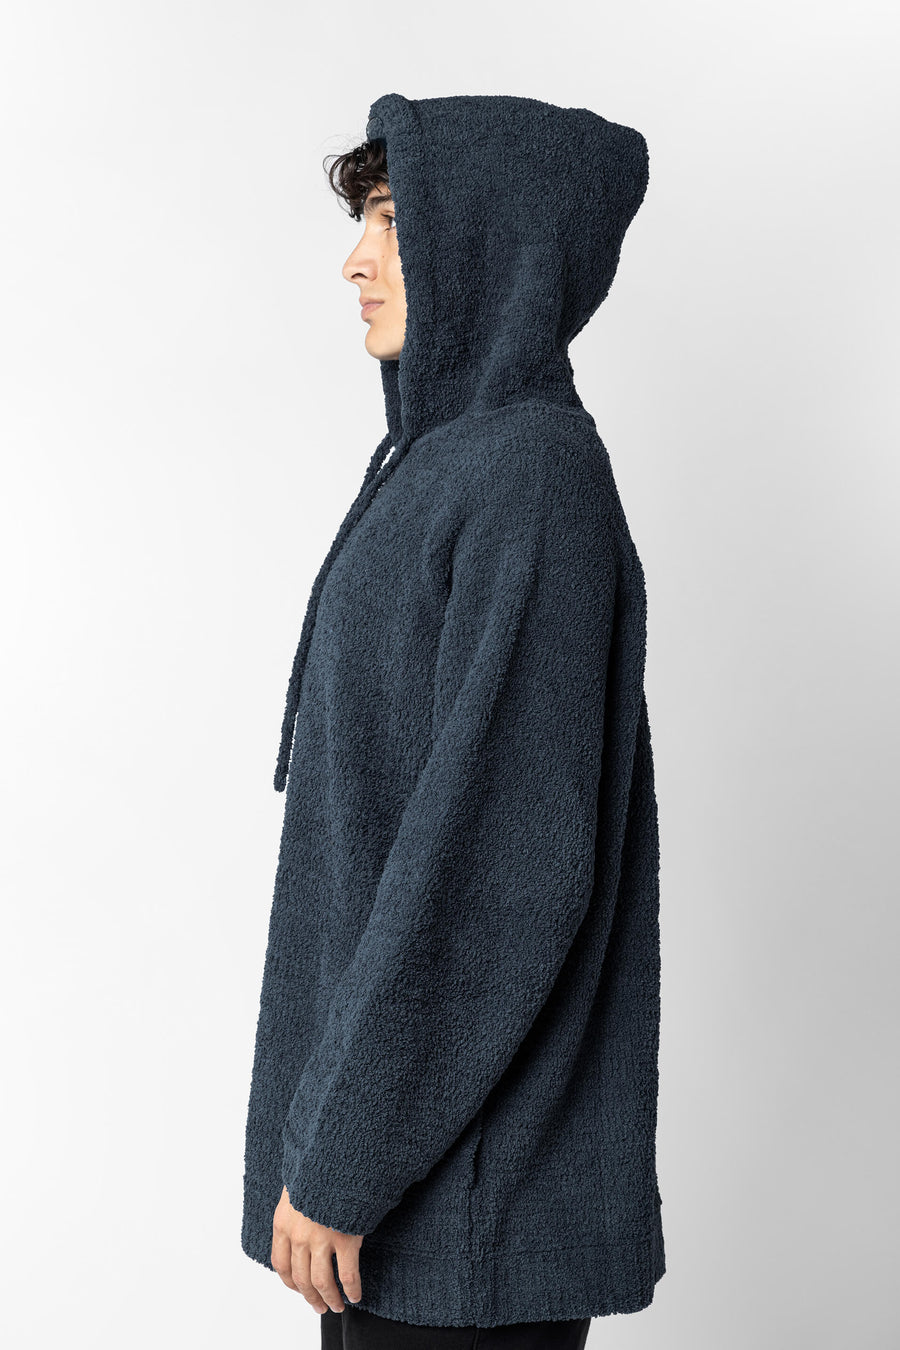 Secondary image of Snug Blanket Hoodie